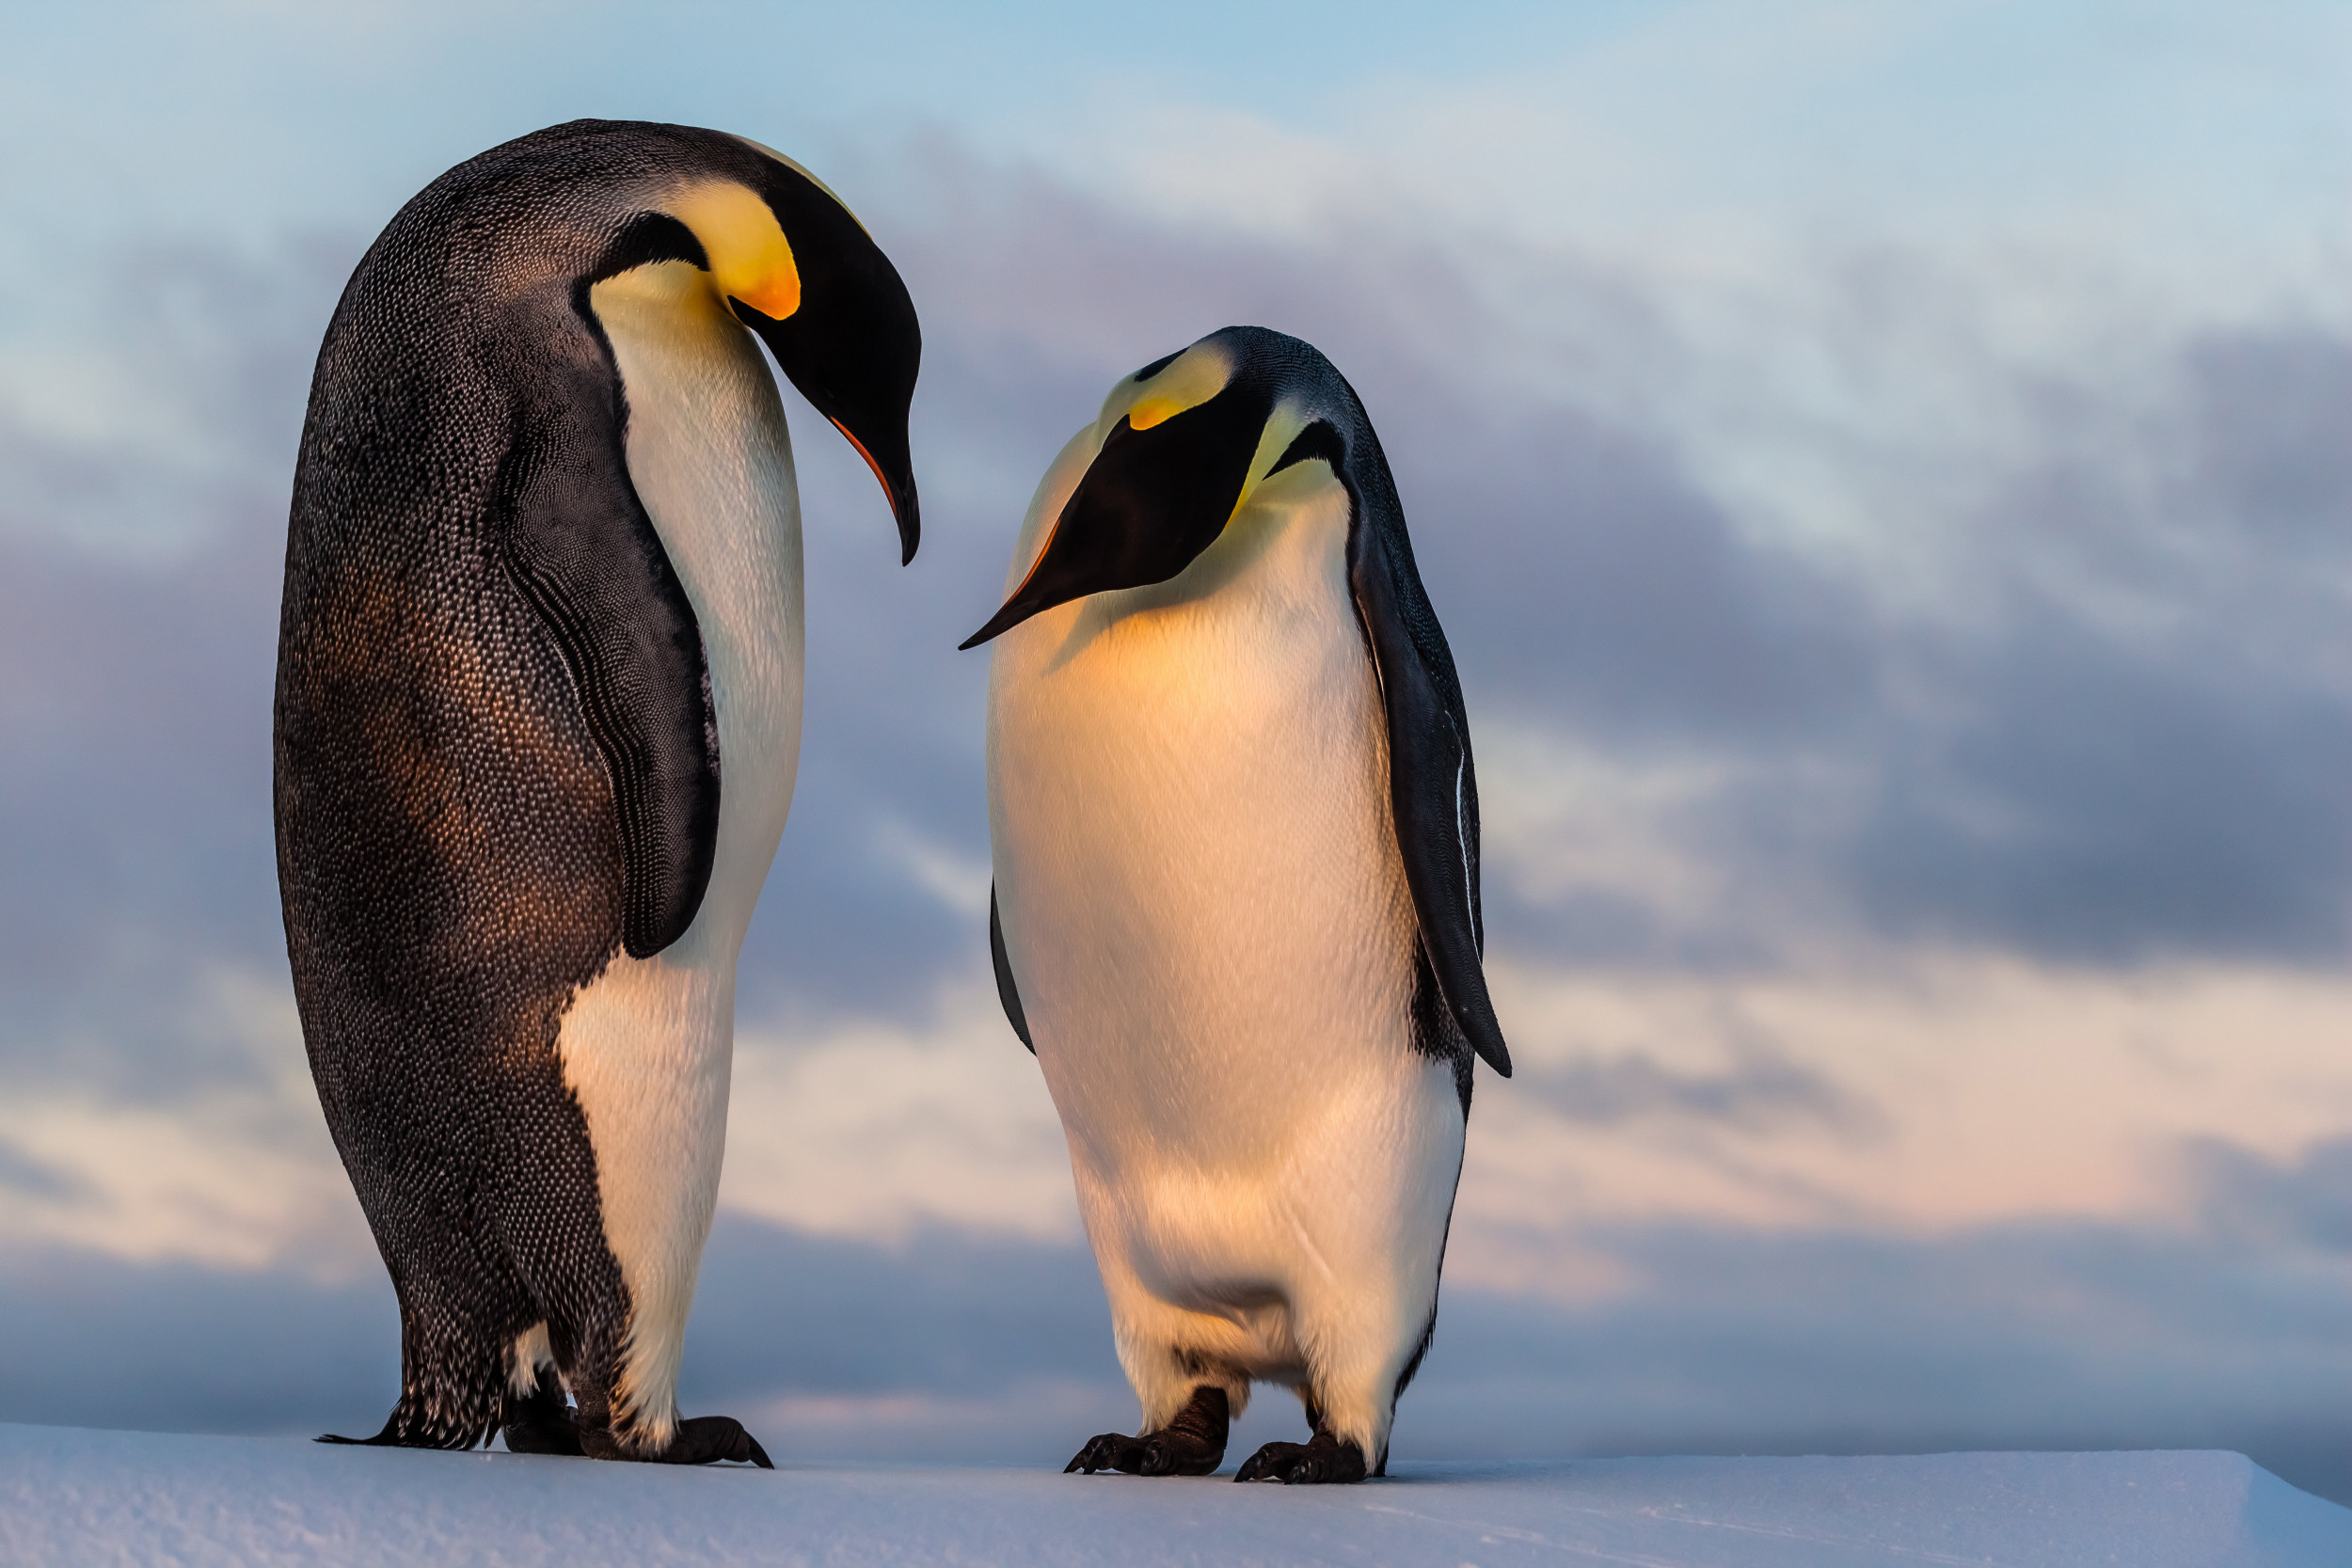 Chim cánh cụt cúi đầu nhìn nhau